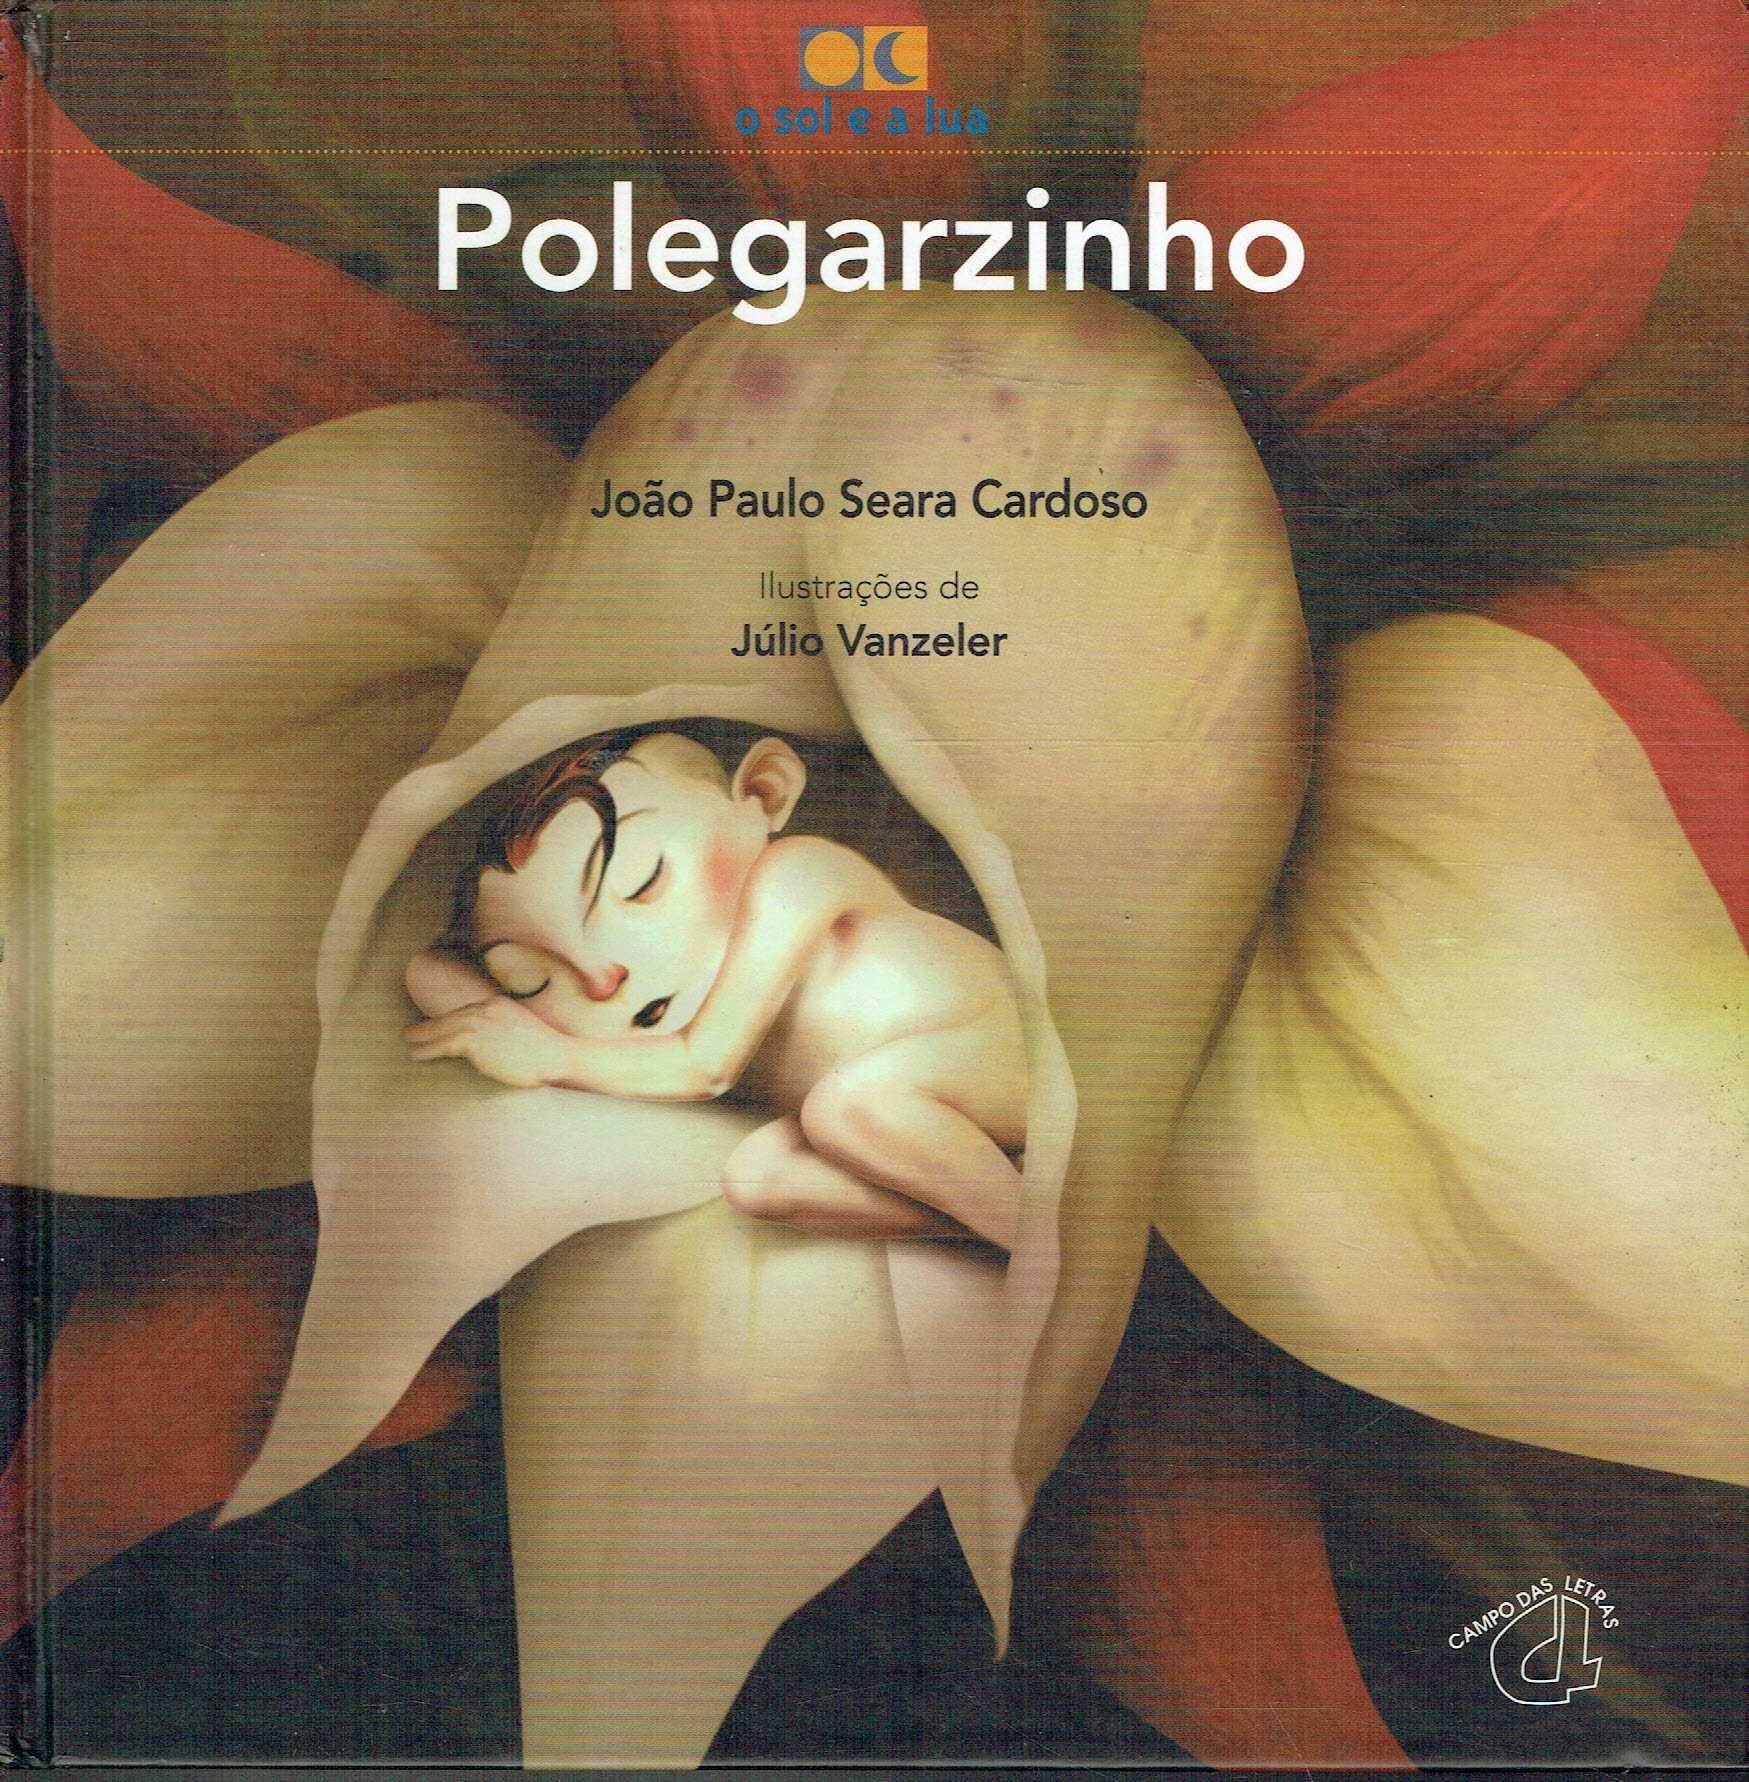 7905

Polegarzinho
de João Paulo Seara Cardoso 

Campo das Letras